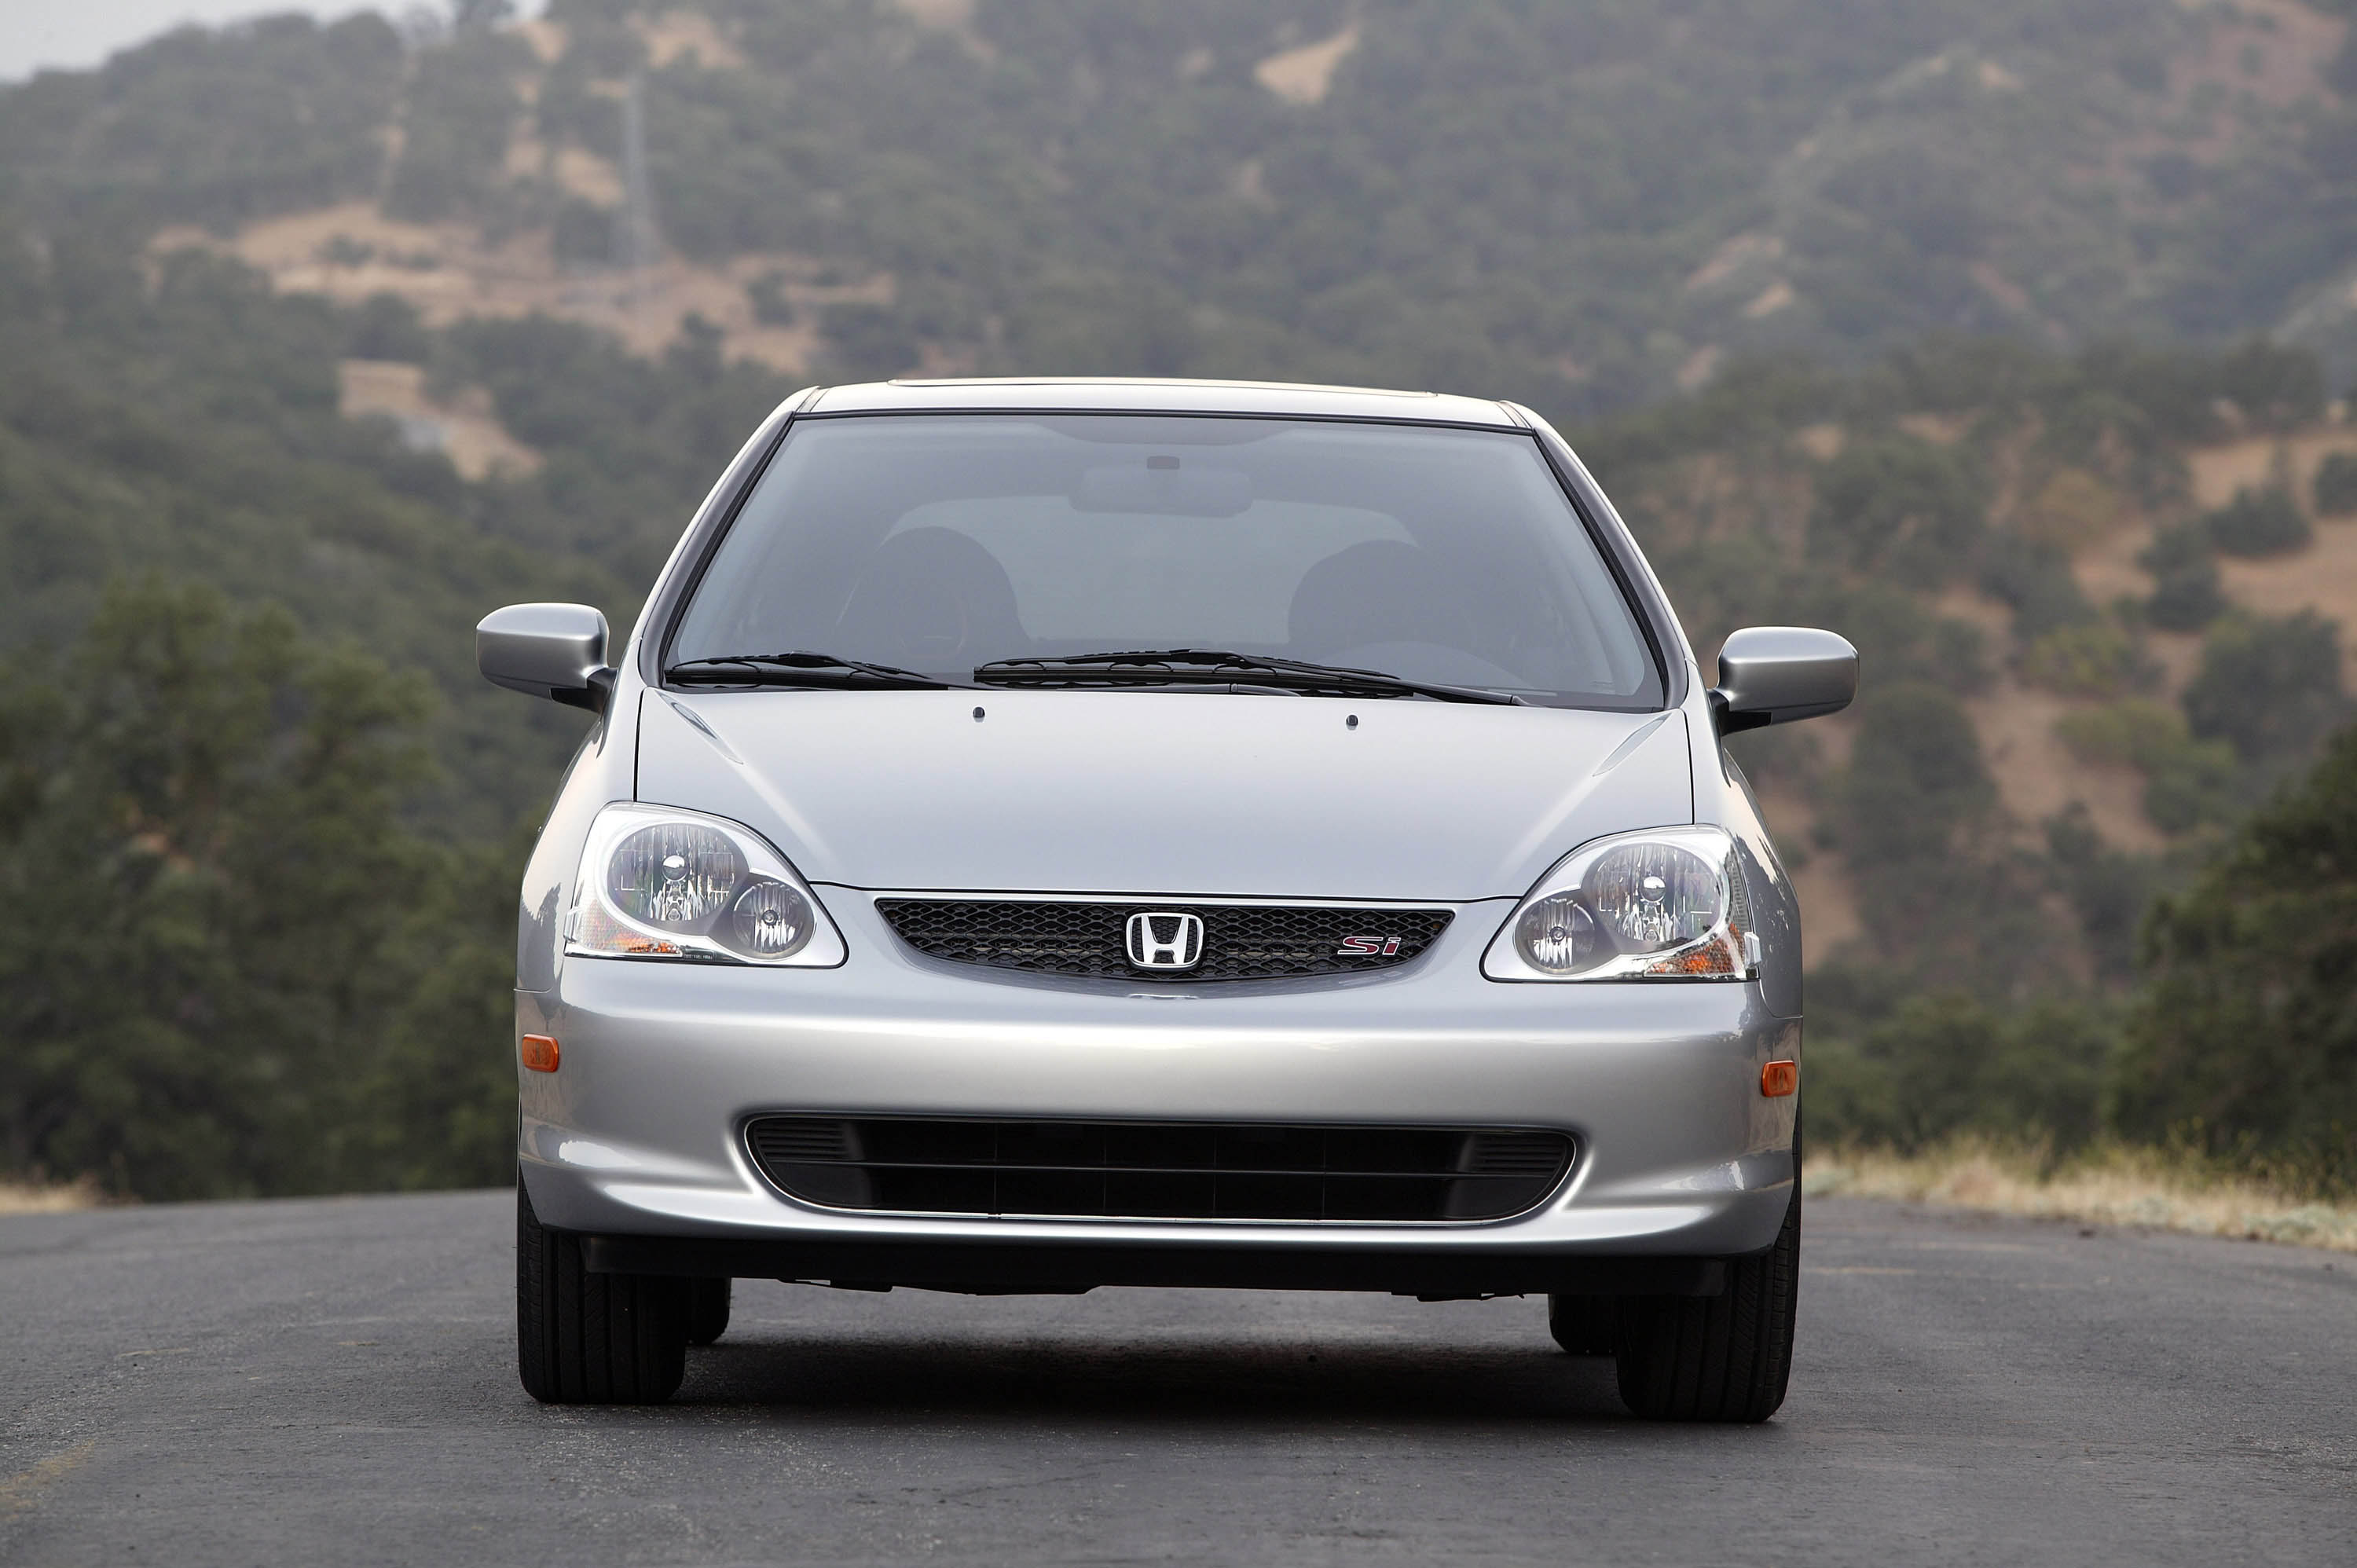 Honda civic 2005